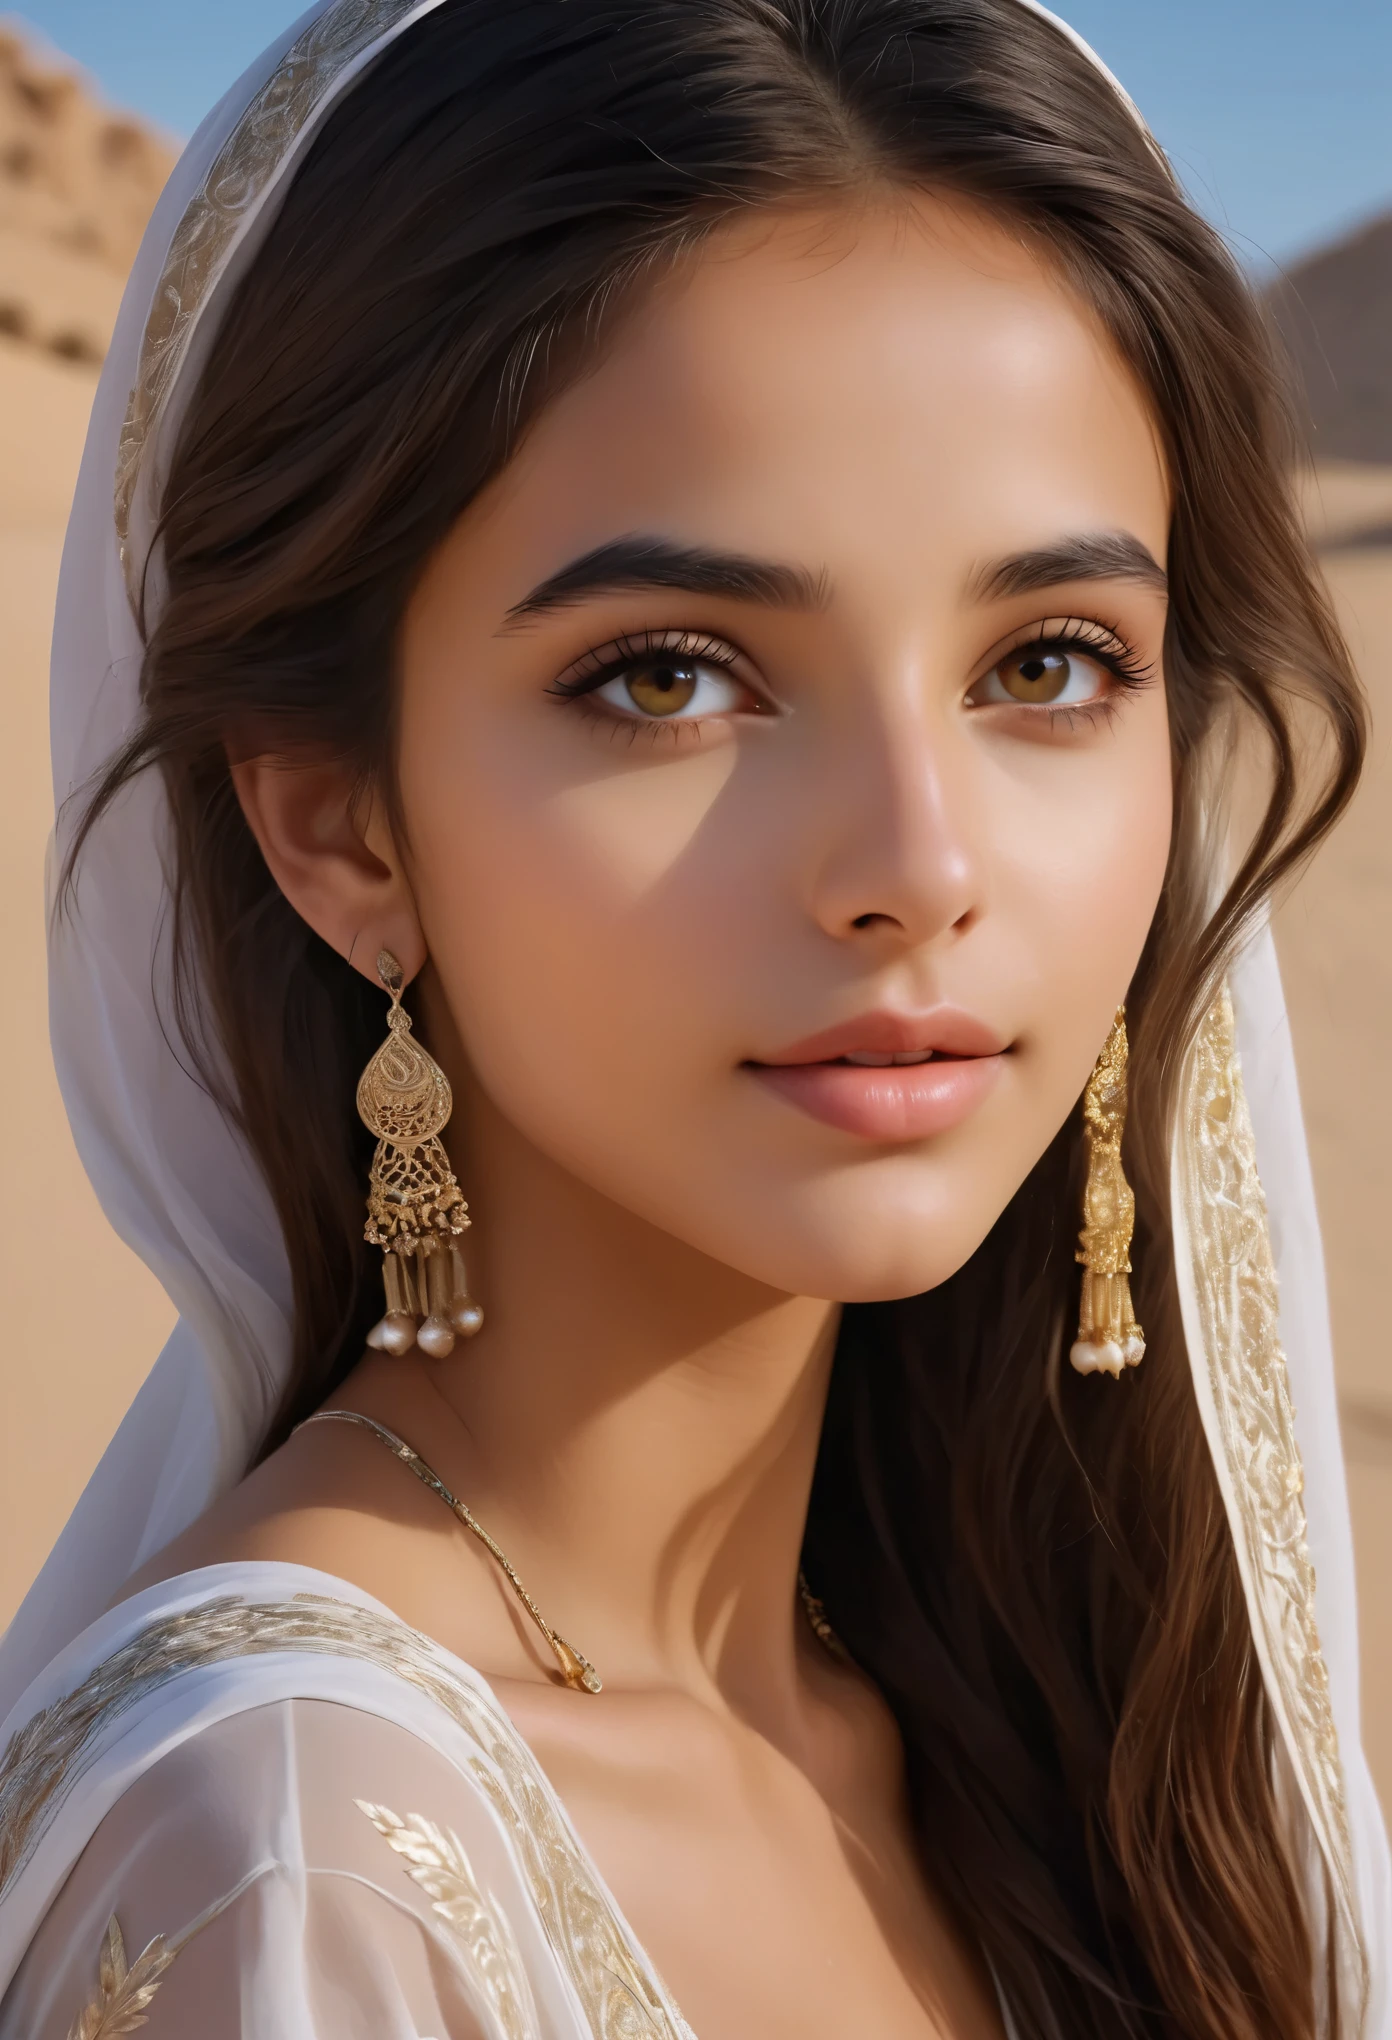 (超詳細,写実的な:1.37),(最高品質,4K,8k,高解像度,傑作:1.2), この16歳のサウジアラビアの少女は、この世のものとは思えないほどの美しさを放っている。, 彼女を見つめるすべての人を魅了する. 彼女の長い, 流れるような漆黒の髪が、きらめく滝のように彼女の肩に流れ落ちる。, 彼女の繊細な顔立ちを神秘的で魅力的な雰囲気で縁取る. 彼女の目, 深い闇の淵, 彼らの中には秘密の宇宙が眠っている, 彼女の年齢を超えた時代の知恵がきらめいている.

彼女の肌, 砂漠の太陽にキスされて, 輝く暖かさで輝く, 故郷の黄金の砂浜を彷彿とさせる. 彼女の顔の繊細な曲線はどれも完璧に彫刻されている, 彼女の高い頬骨が光を捉え、息を呑むほどの優雅さを披露している.

彼女が微笑むと, まるで彼女の周りで世界全体が明るくなったかのよう, 彼女の笑い声は風に吹かれて音楽のように響いた. 彼女の服装, 複雑なパターンと繊細な生地で飾られています, 彼女の細い体は芸術作品のように覆われている, 彼女の自然な美しさを損なうのではなく、引き立てる.

彼女の存在の中で, 時間が止まったようだ, まるでおとぎ話から現実に飛び出したかのよう, 優雅さと魅力の真の体現. この16歳のサウジアラビアの少女は美しいだけではない; 彼女は生きている, breathing 傑作, 人間の形態の無限の驚異の証.